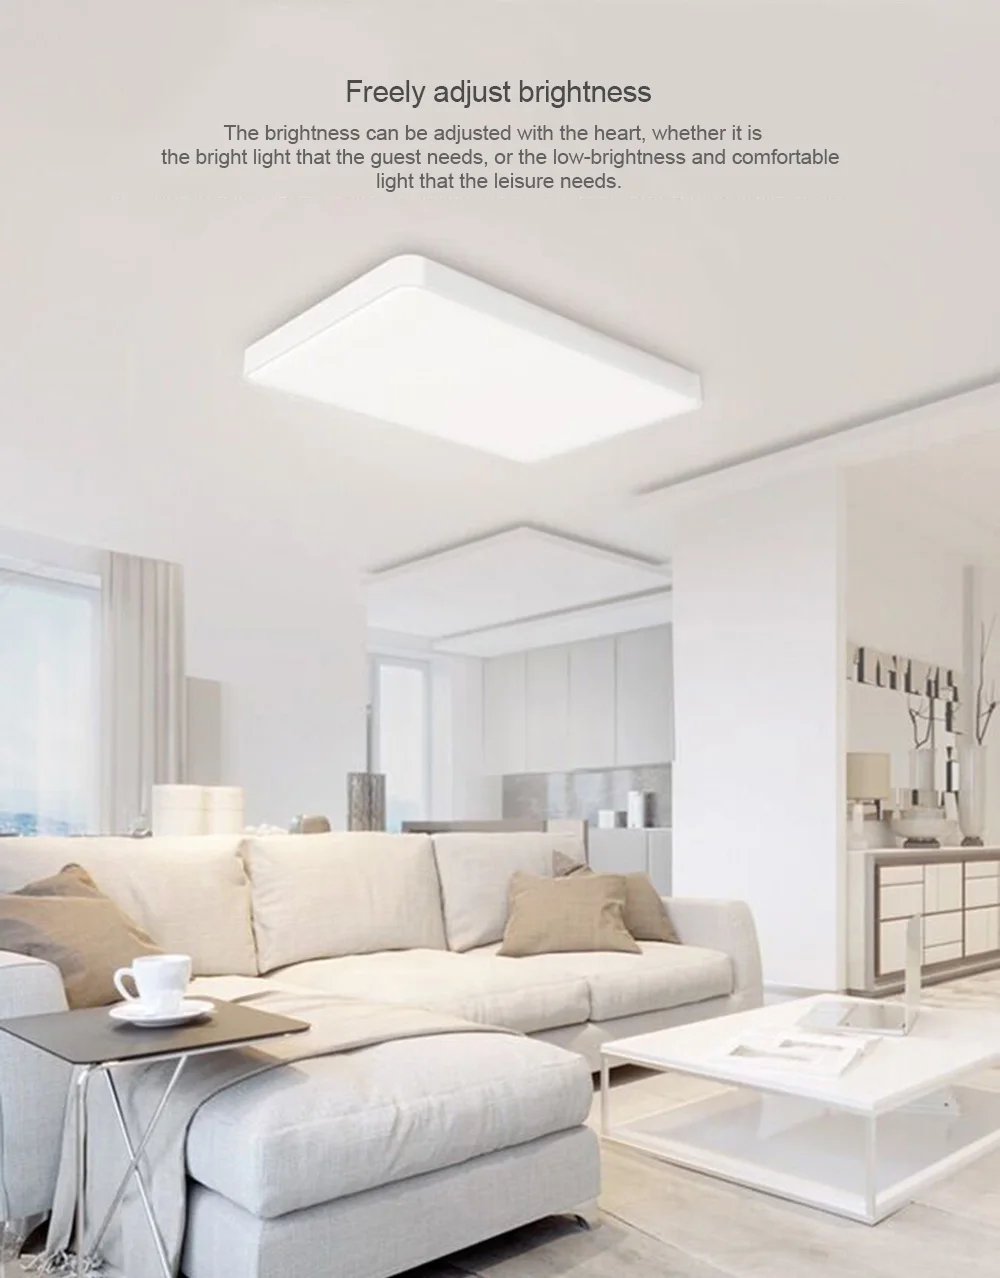 Yeelight простой светодиодный потолочный светильник Pro для гостиной пылезащитный Wifi Voice Mijia Mi Home App Smart control Ra95 большой потолочный светильник